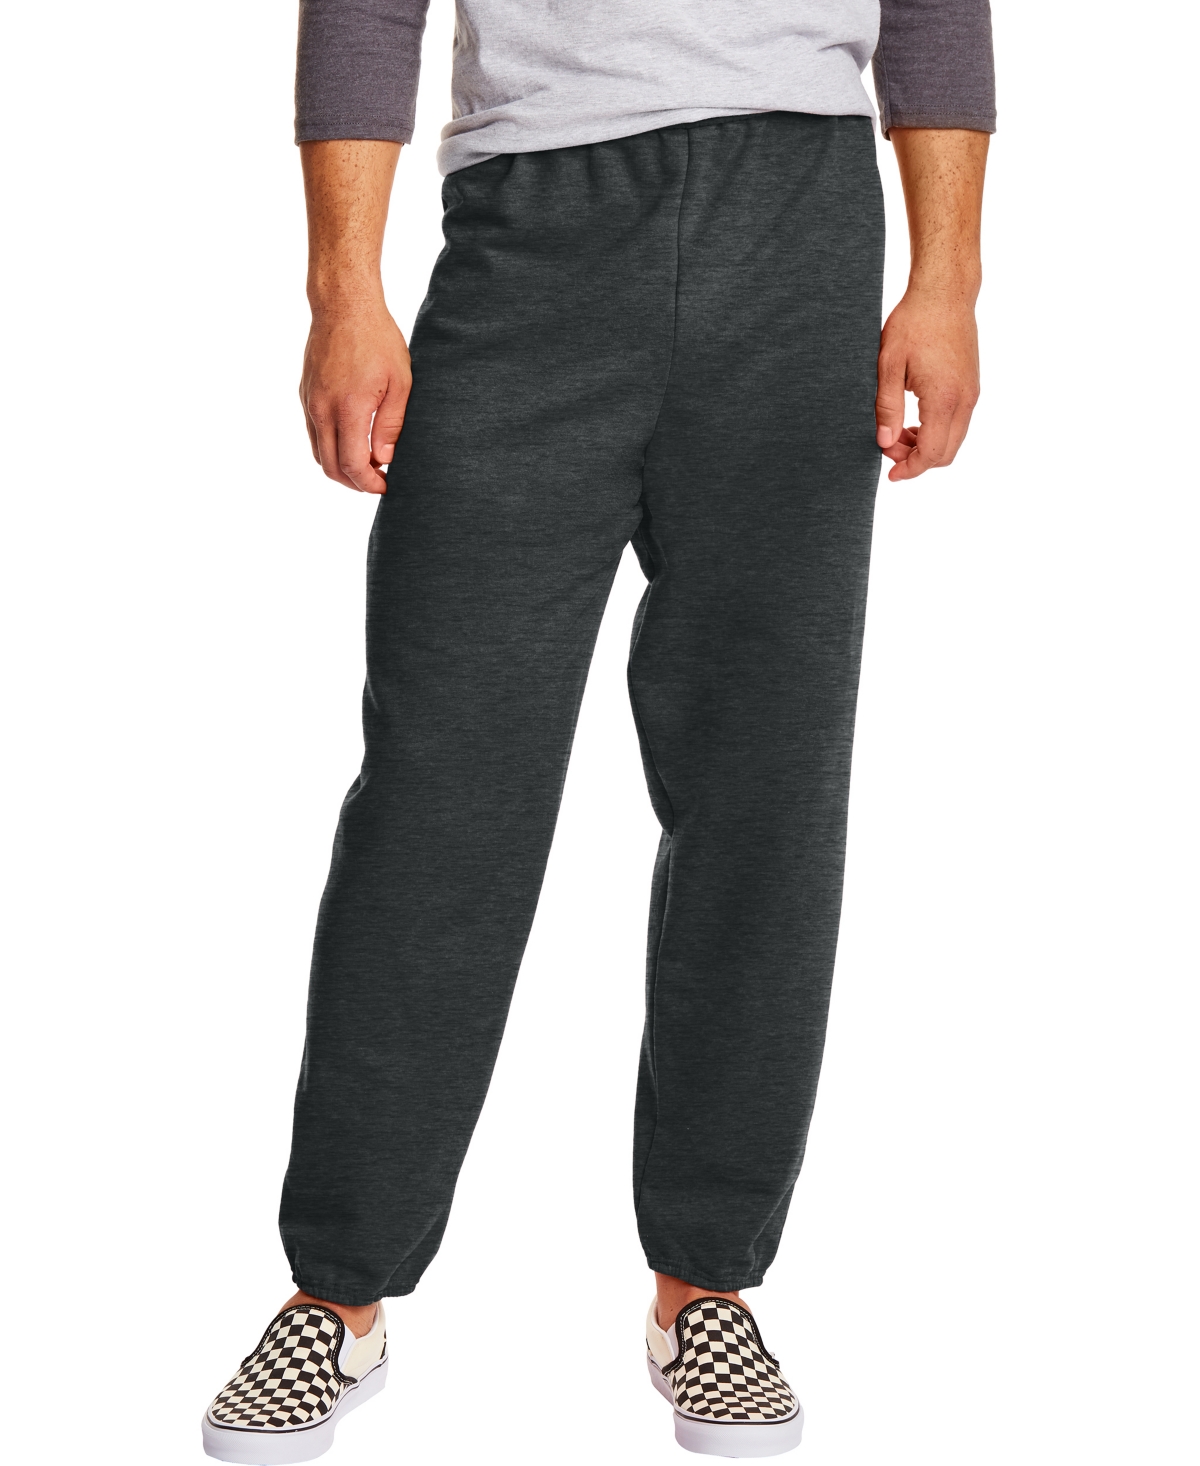 Hanes Ecosmart Men's 32" Fleece Sweatpants, 2-pack In Charcoal